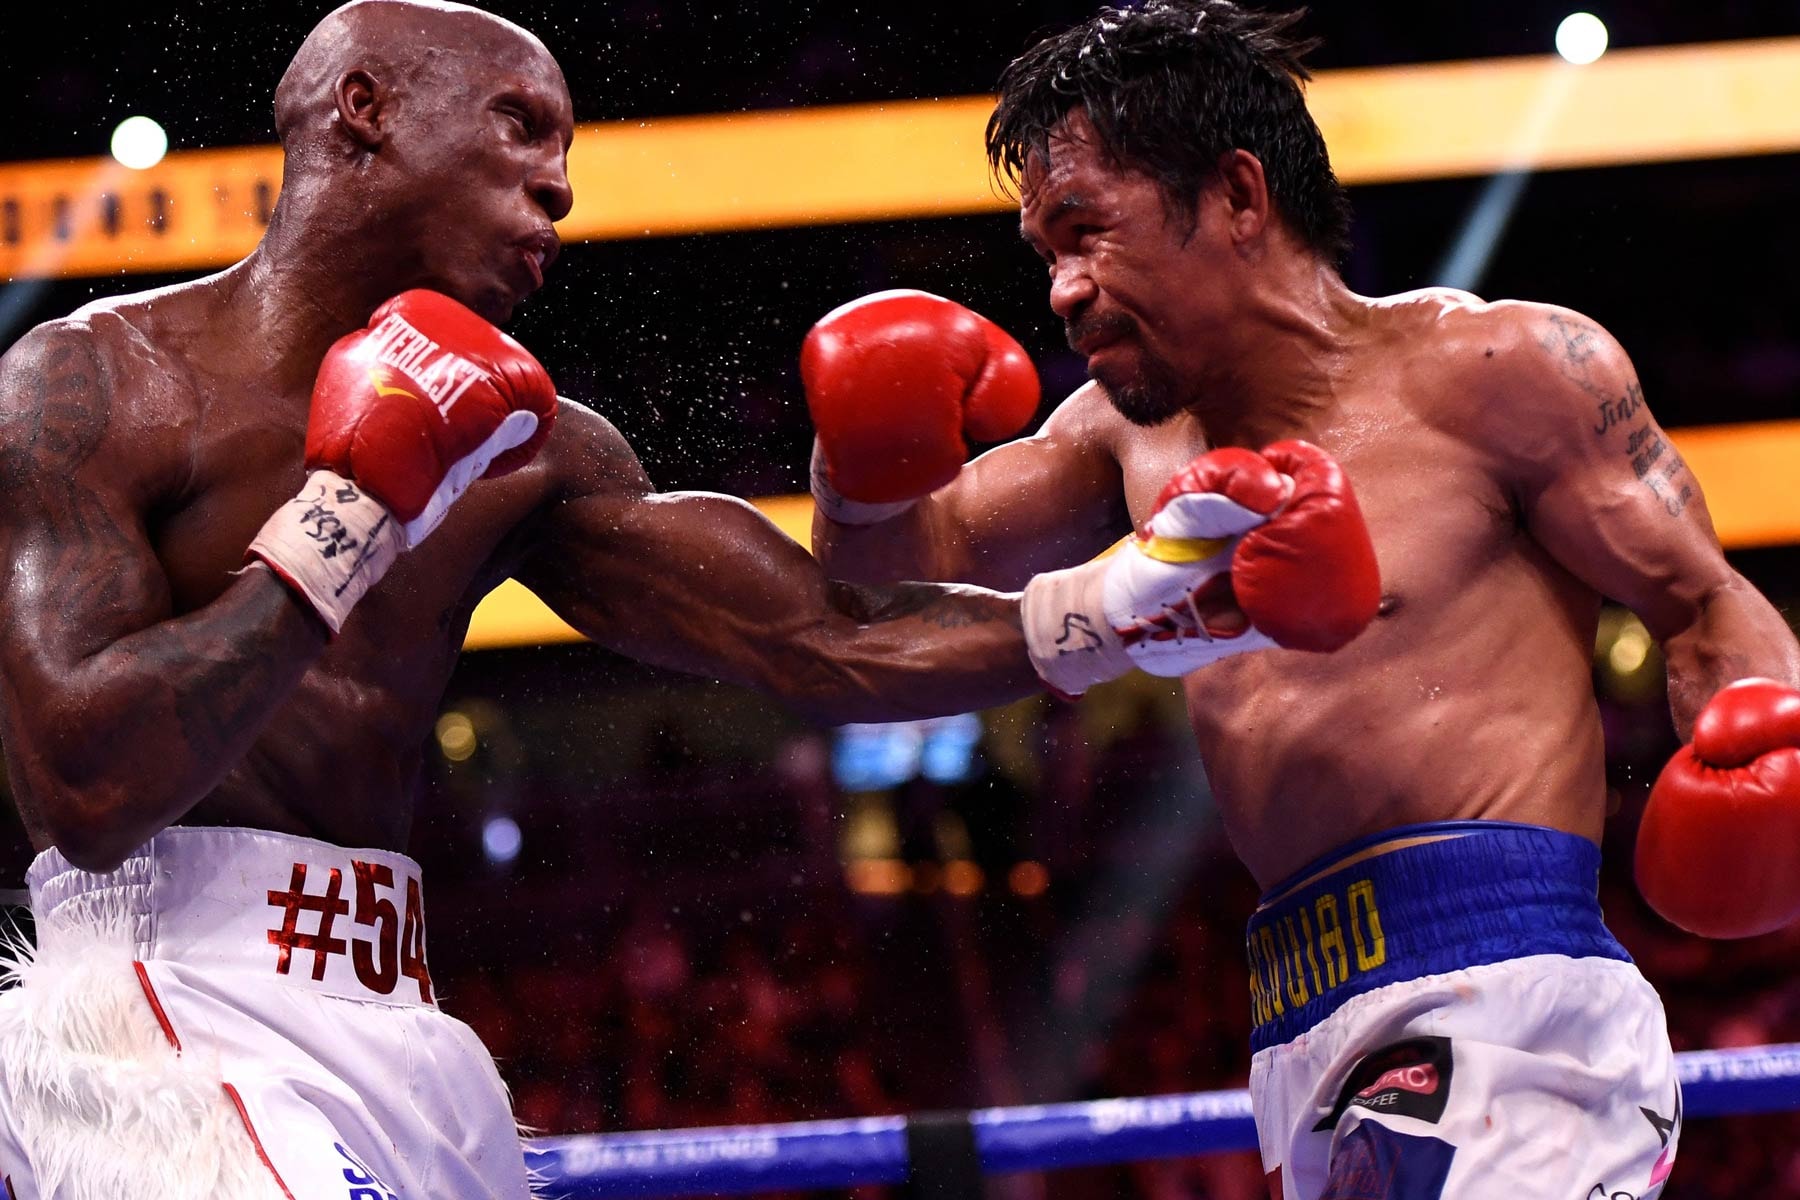 ボクシング界のレジェンド マニー・パッキャオが約2年ぶりの現役復帰戦で敗れる Manny Pacquiao vs. Yordenis Ugas boxing result Errol Spence Jr. boxing sports cuba philippines welterweight